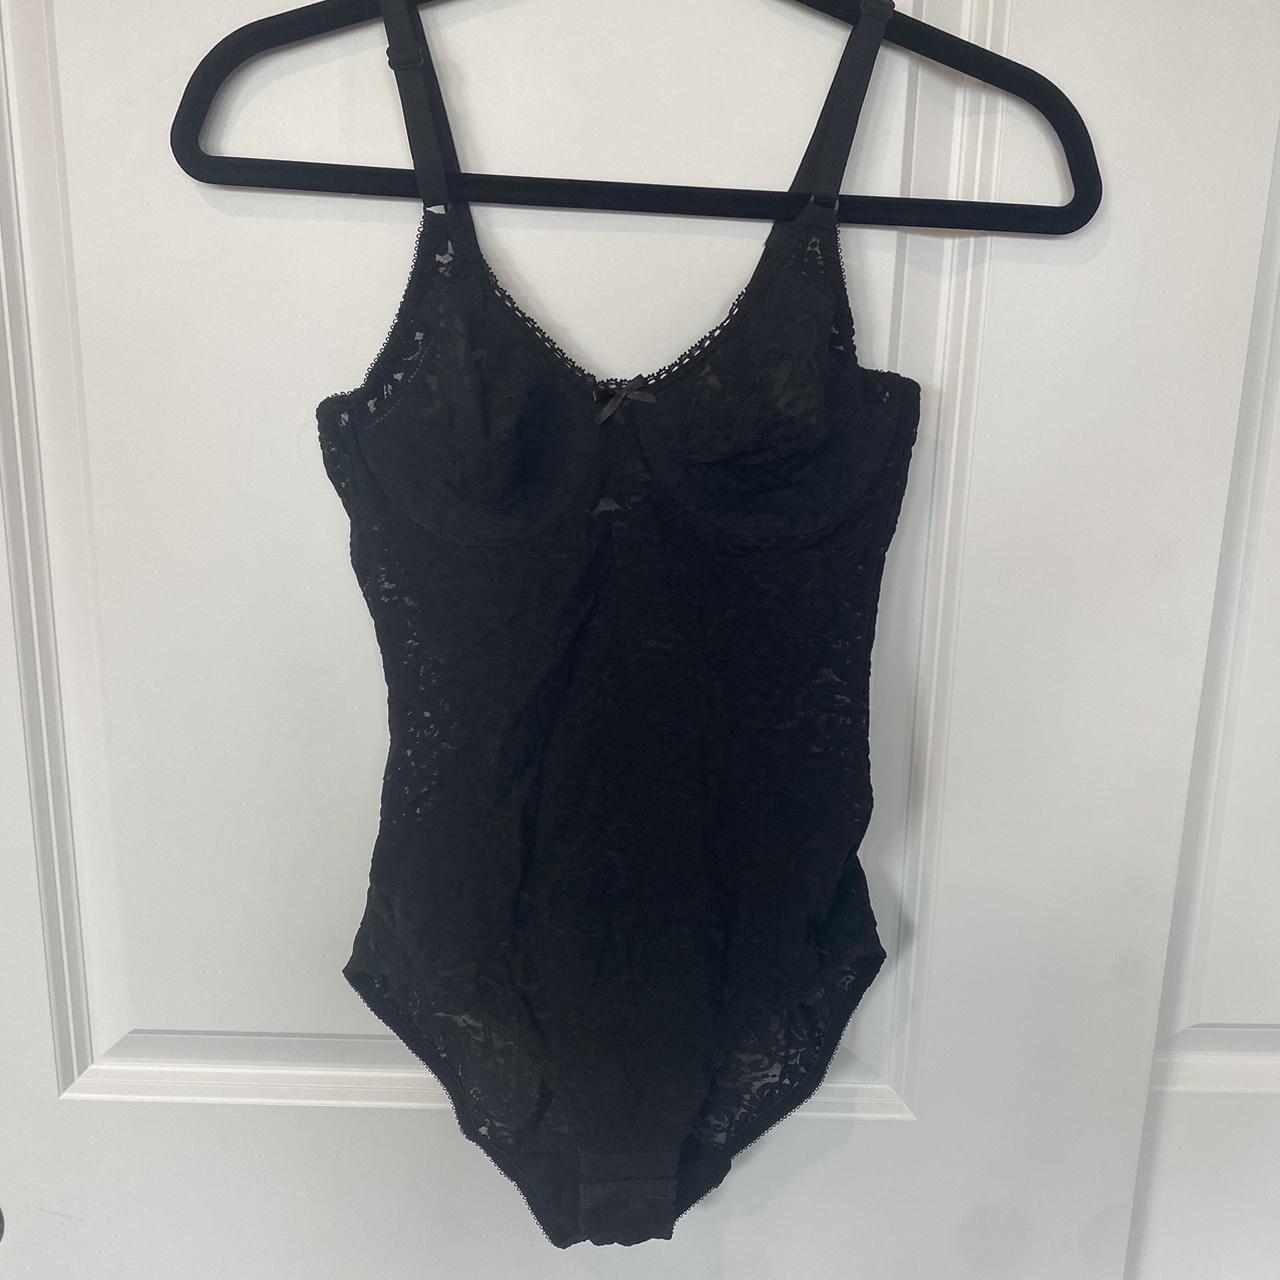 black lace see through body suit/ lingerie size 32B... - Depop